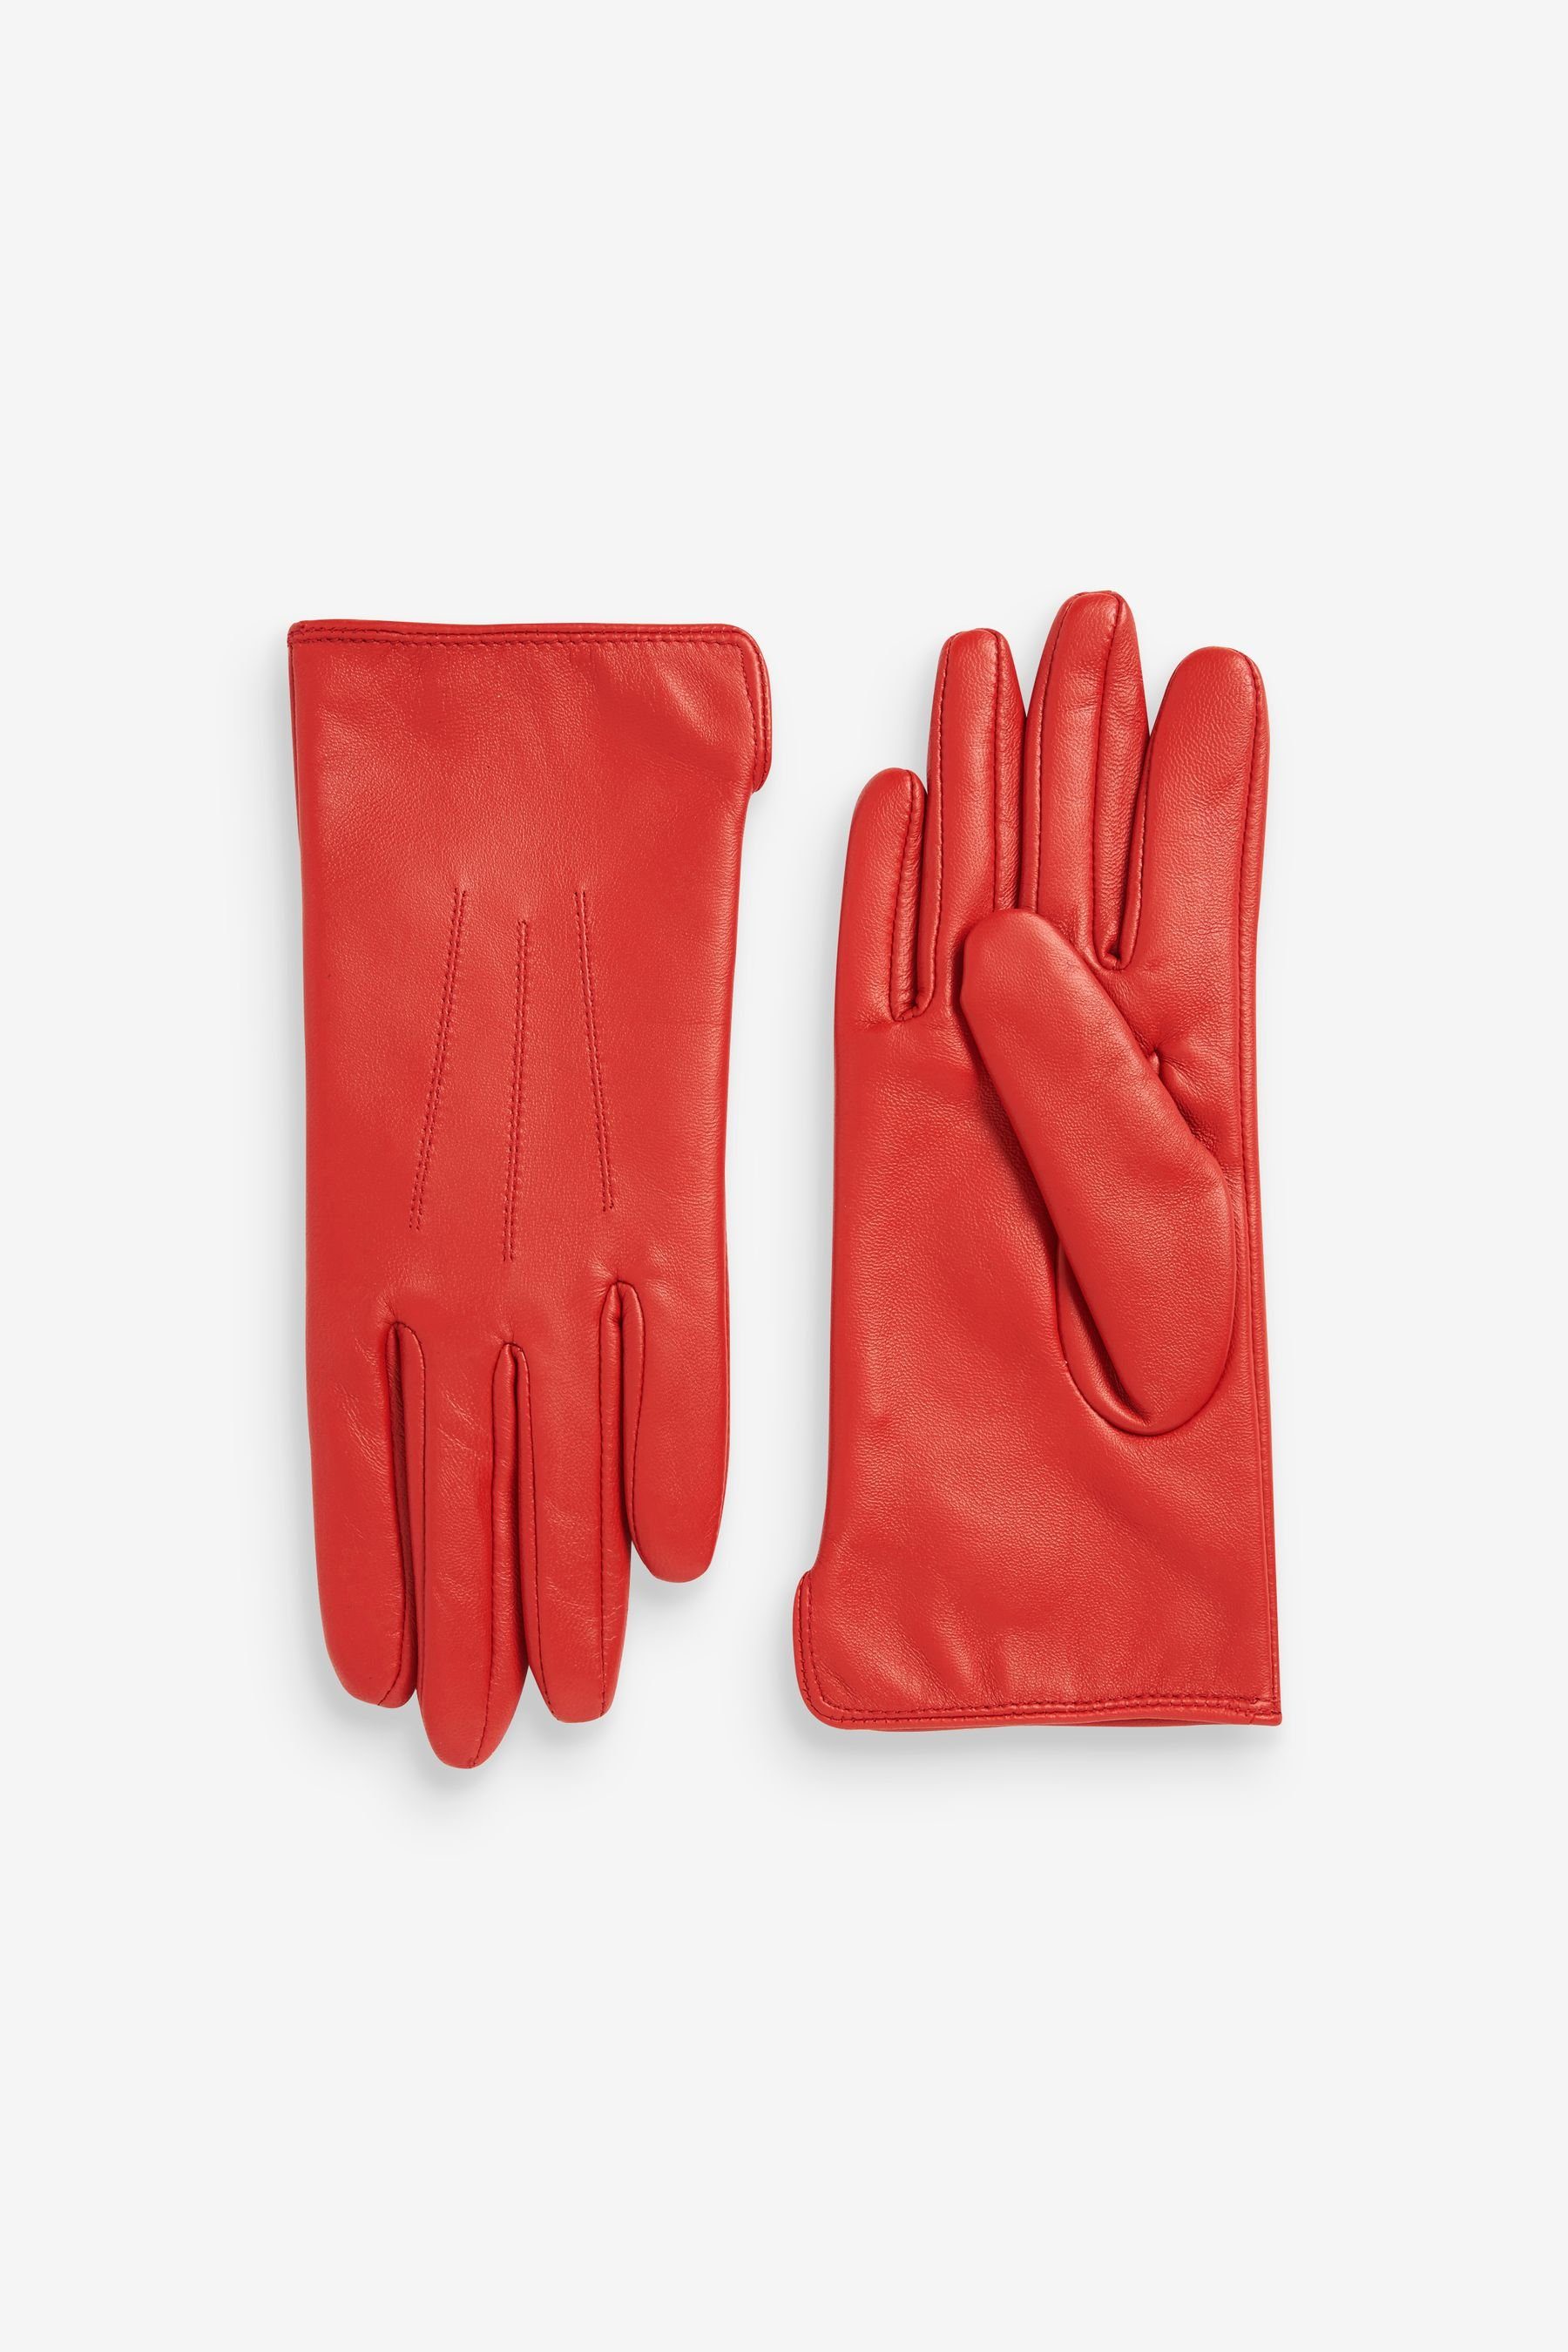 Next Gartenhandschuhe Lederhandschuhe Red